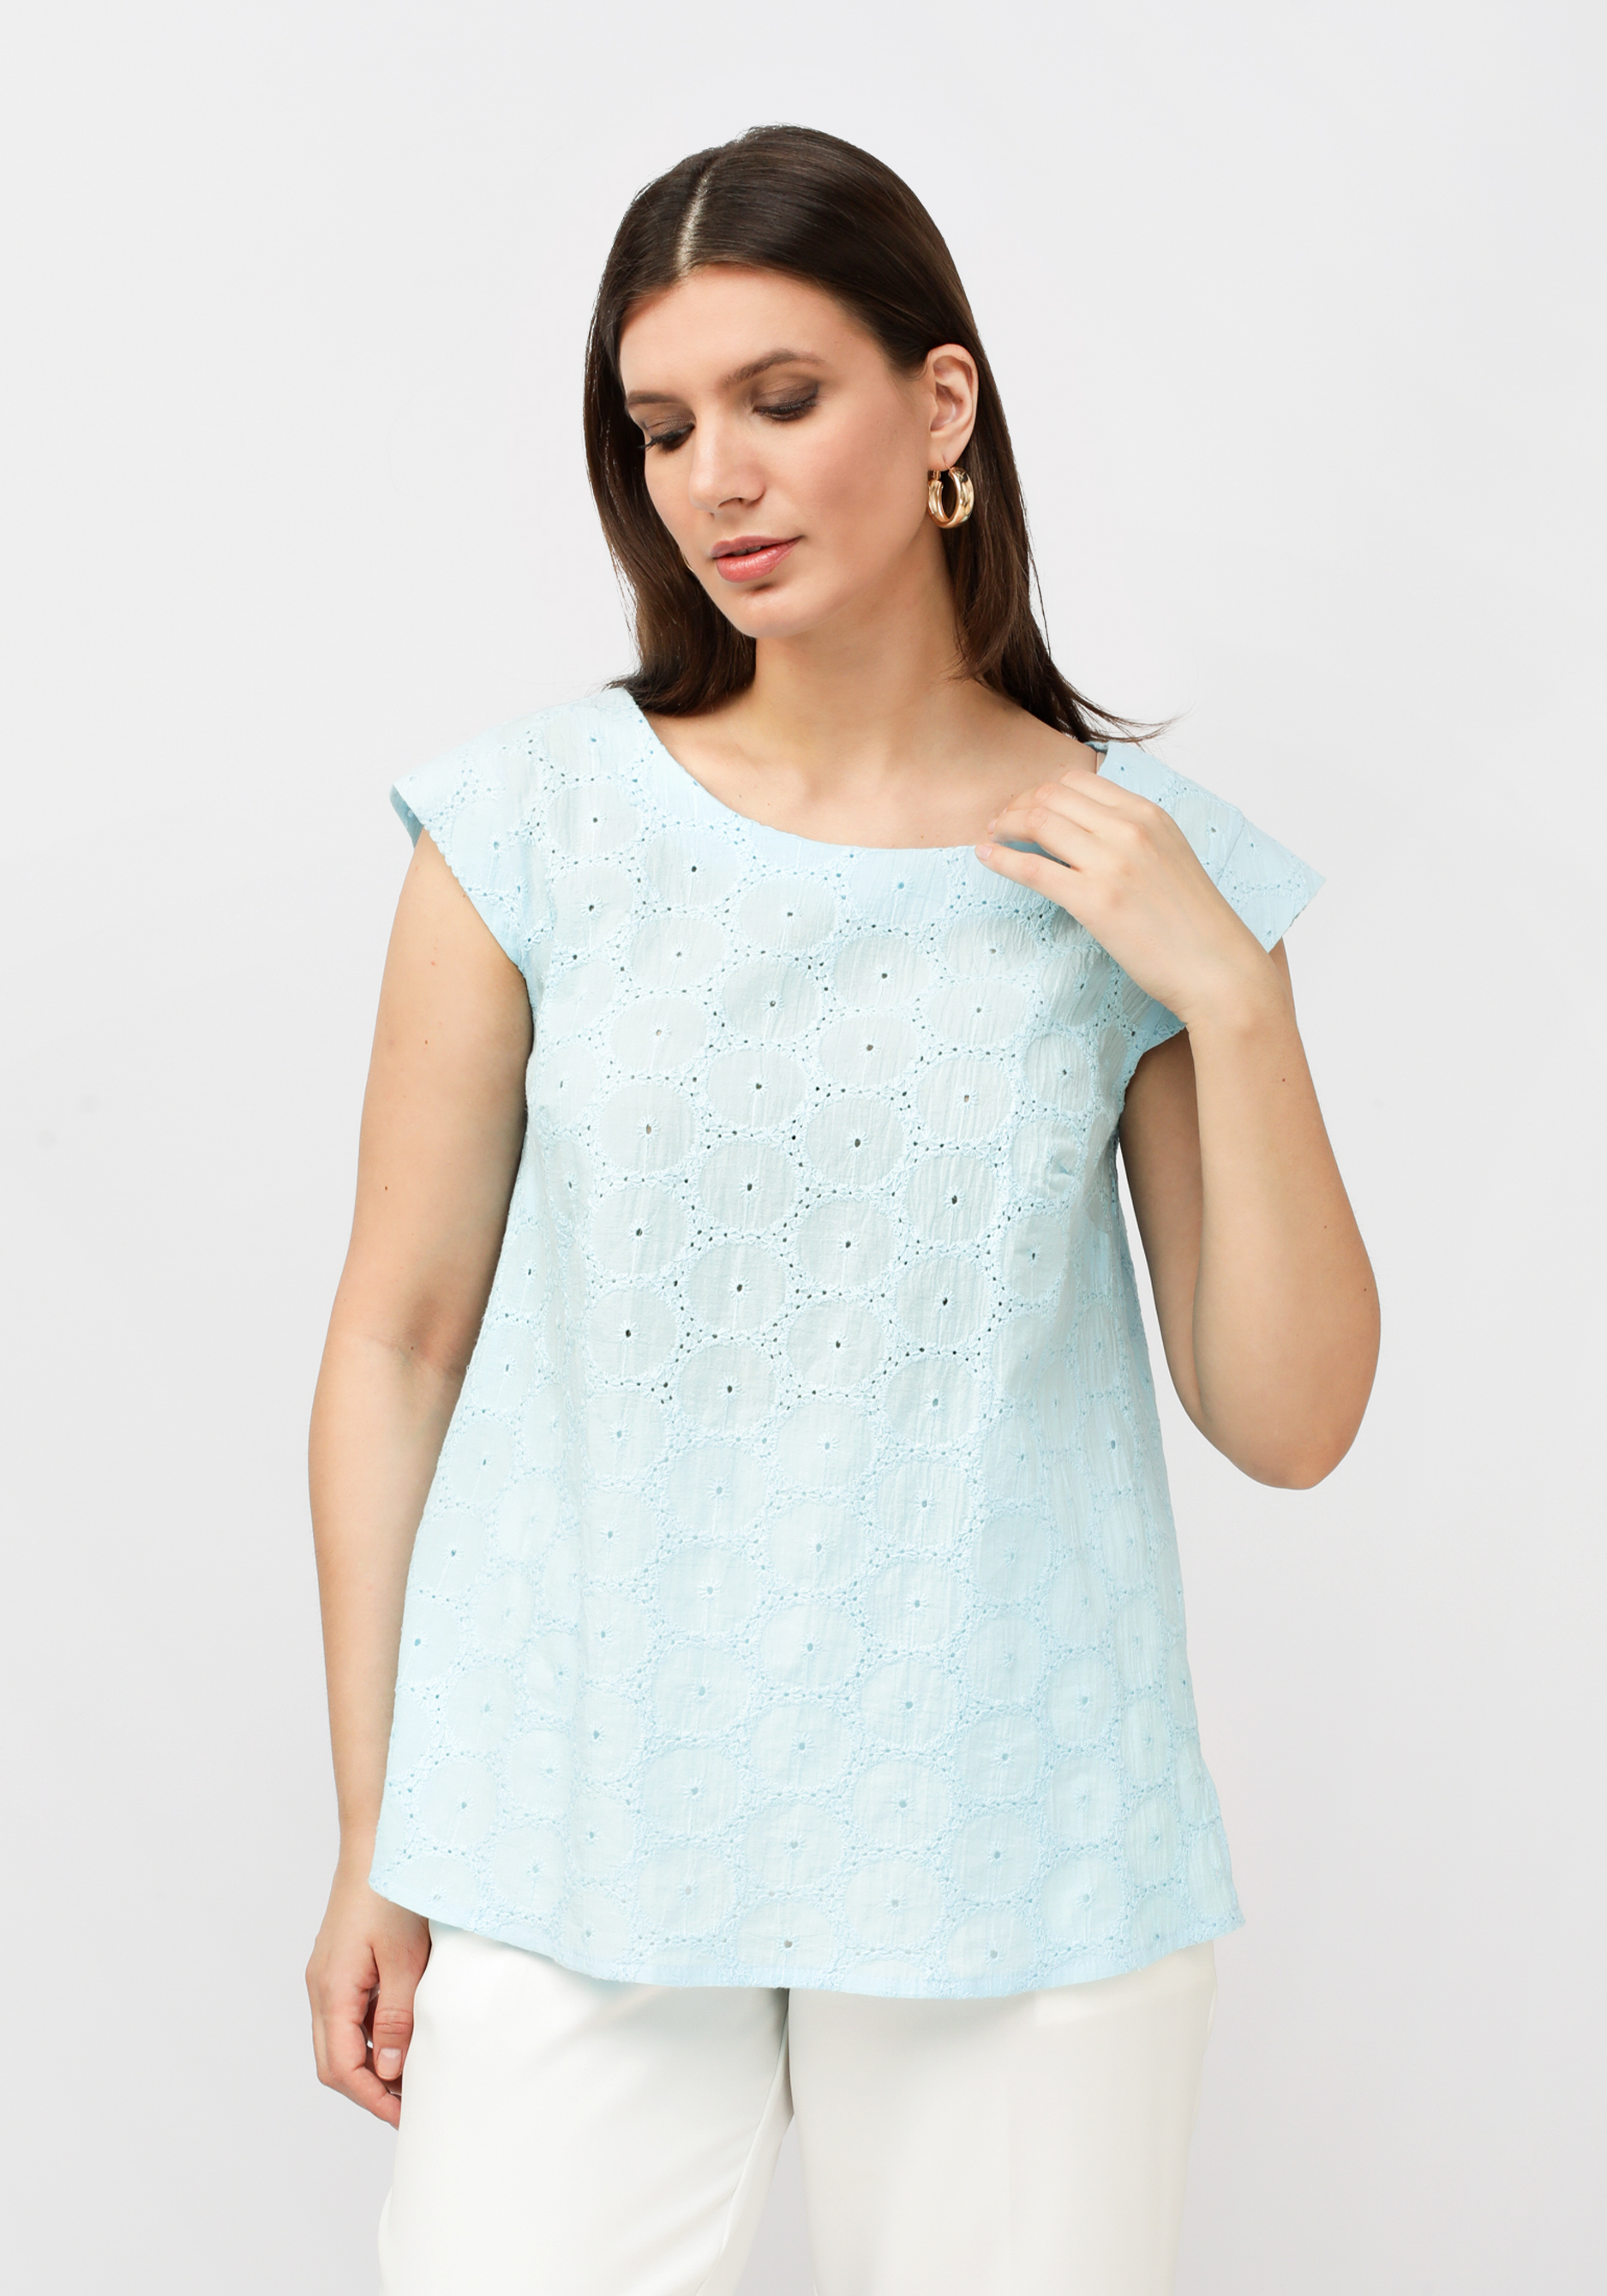 Блуза с ажурным рисунком ткани кпб зима лето гейша голубой р 1 5 сп